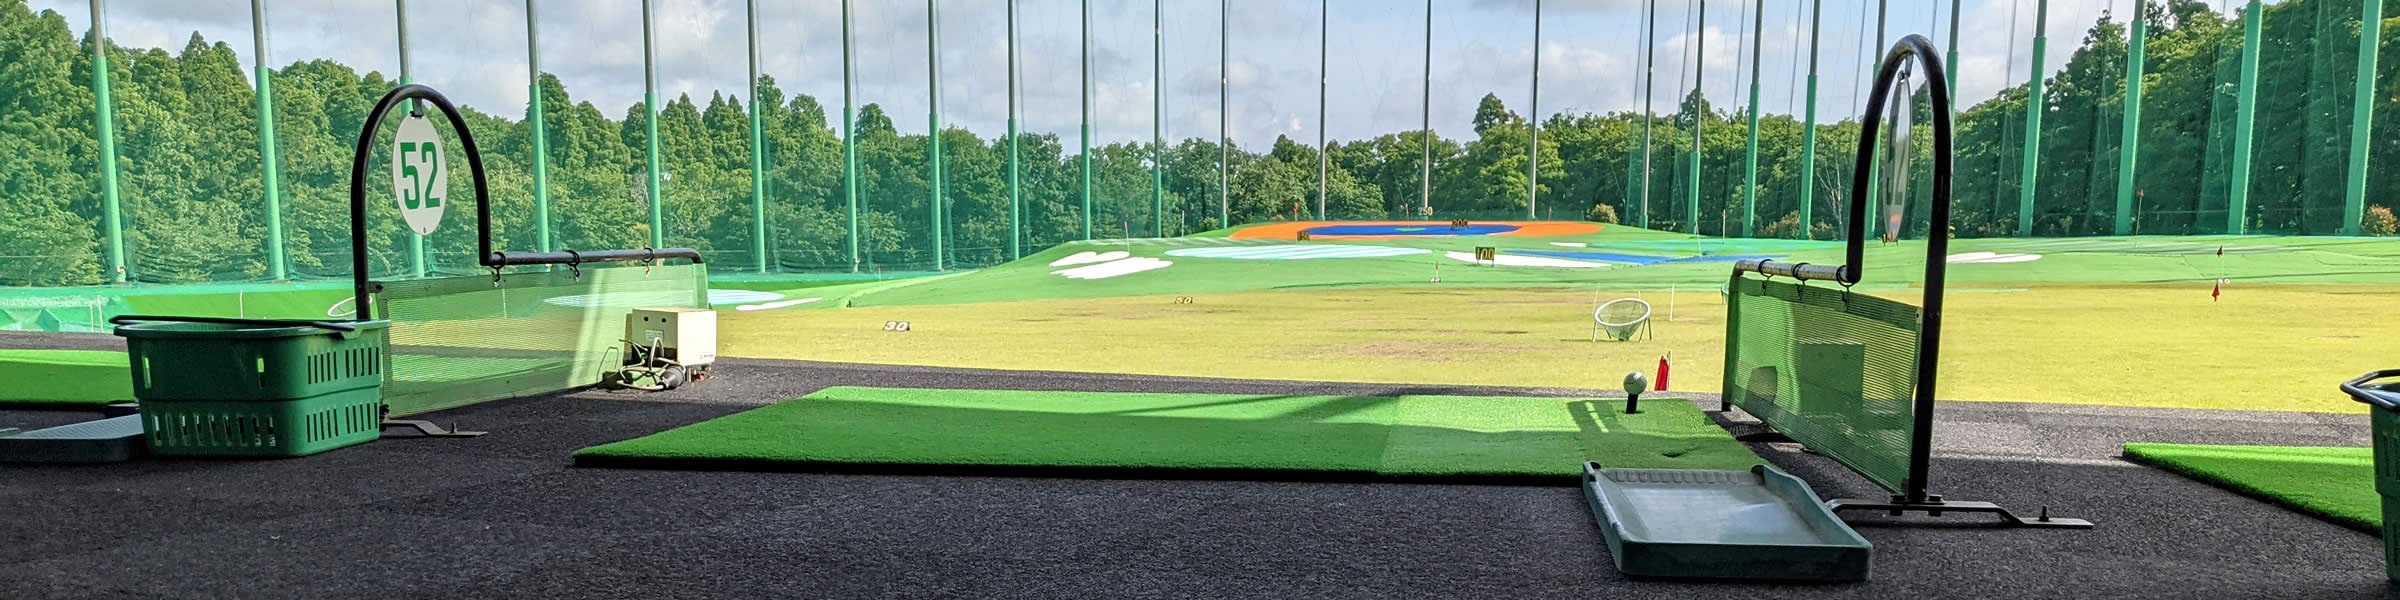 ゴルフ練習場・打ちっぱなし・ゴルフスクール・レッスン